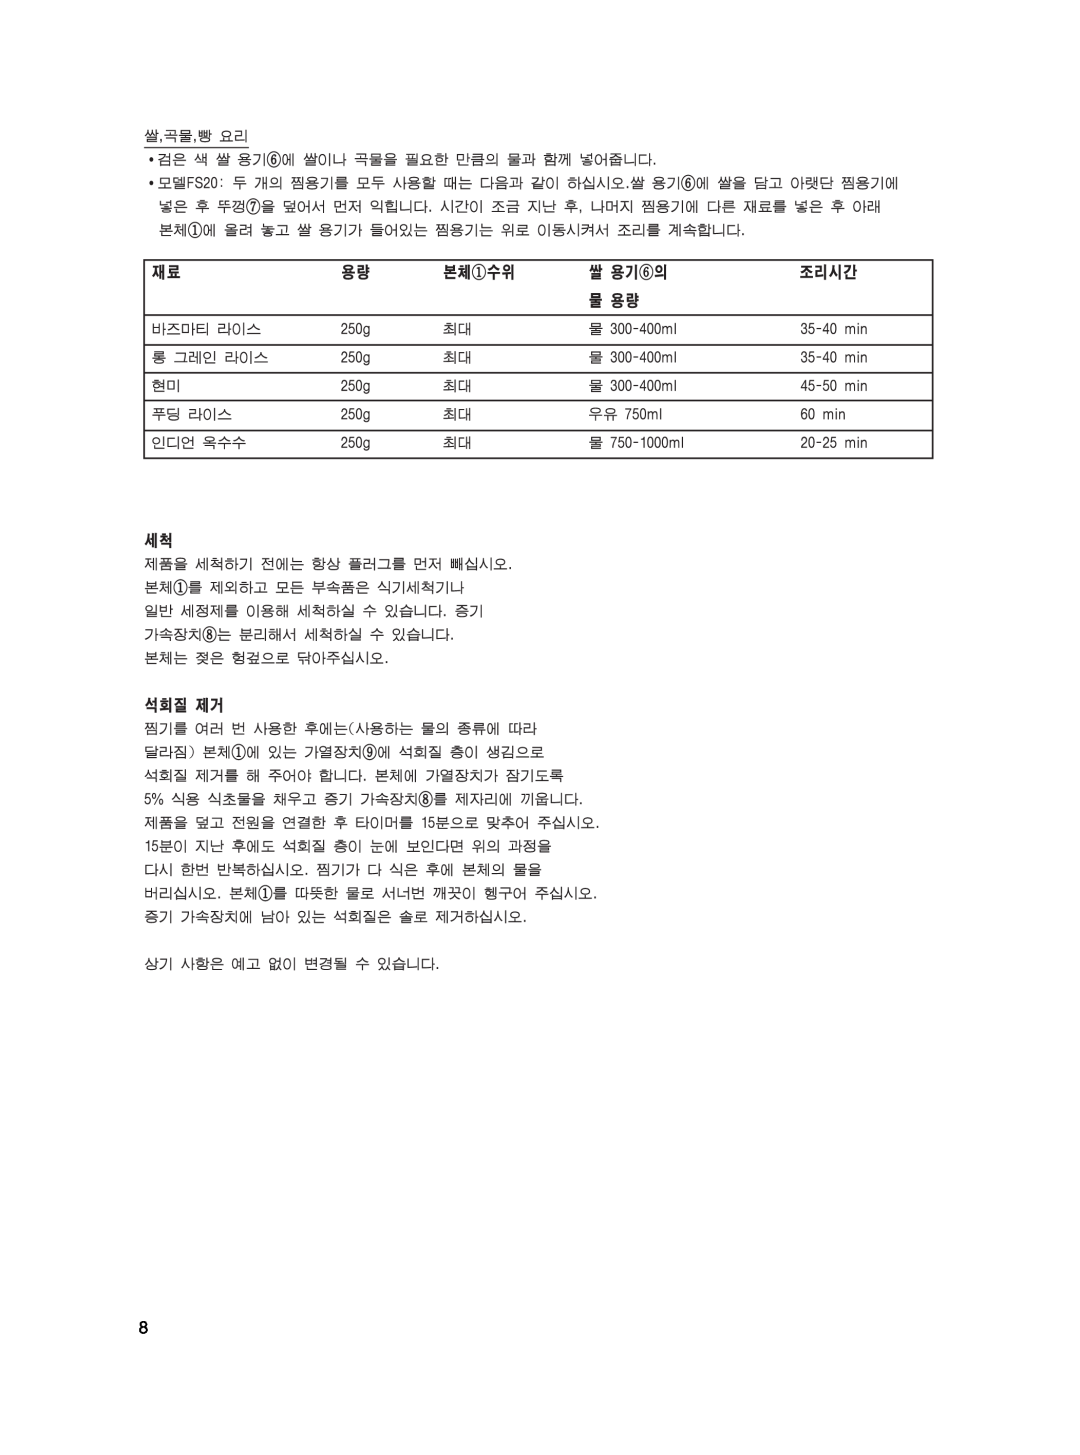 Braun FS10, FS20 manual 